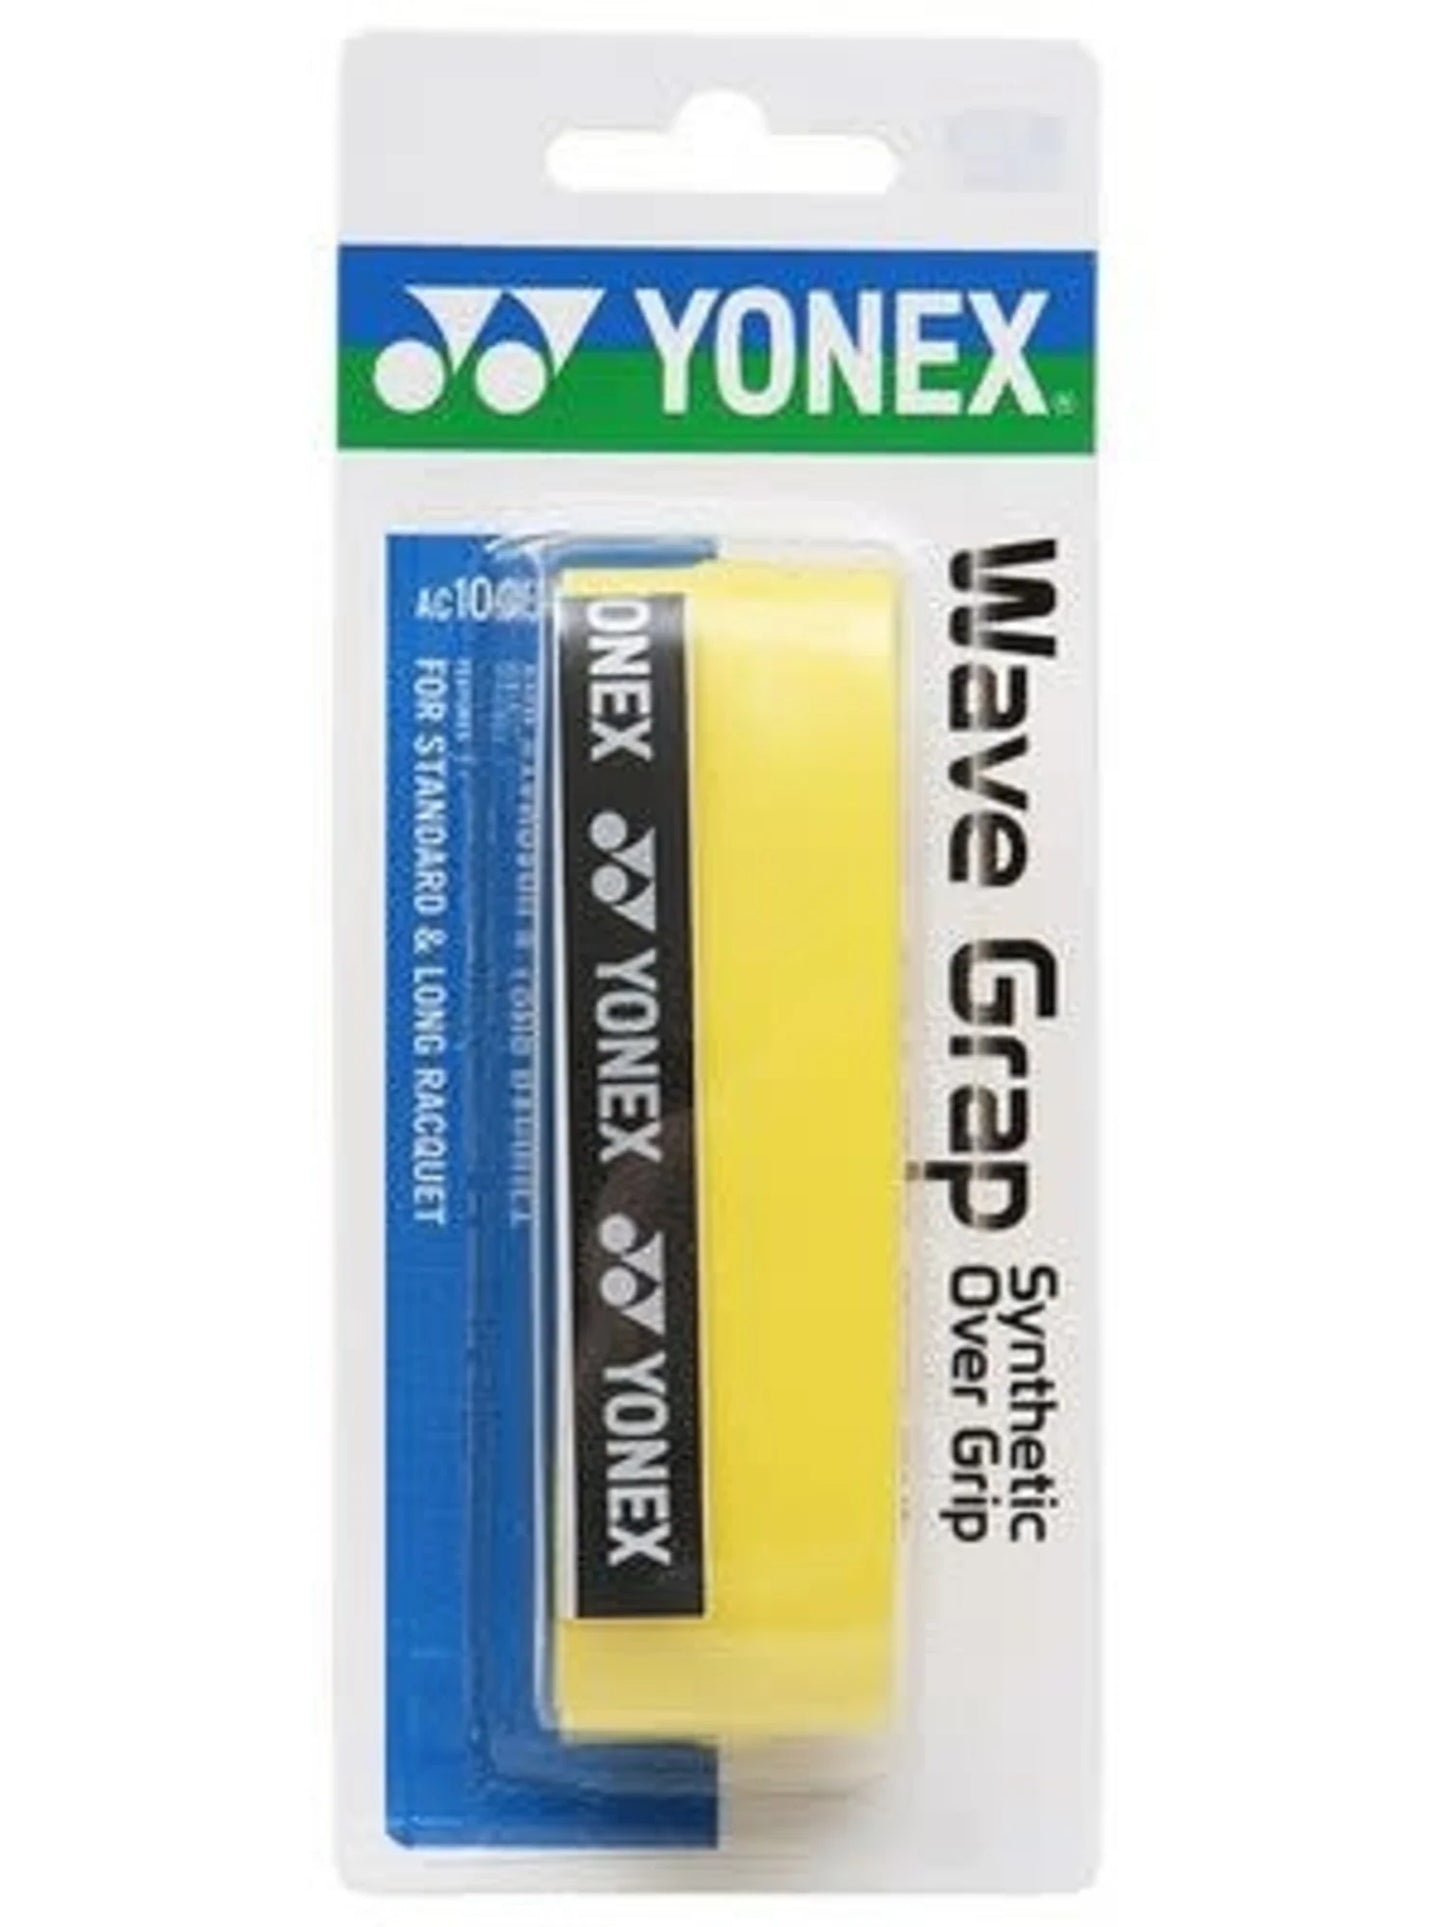 YONEX WAVE GRAP - Max Sports